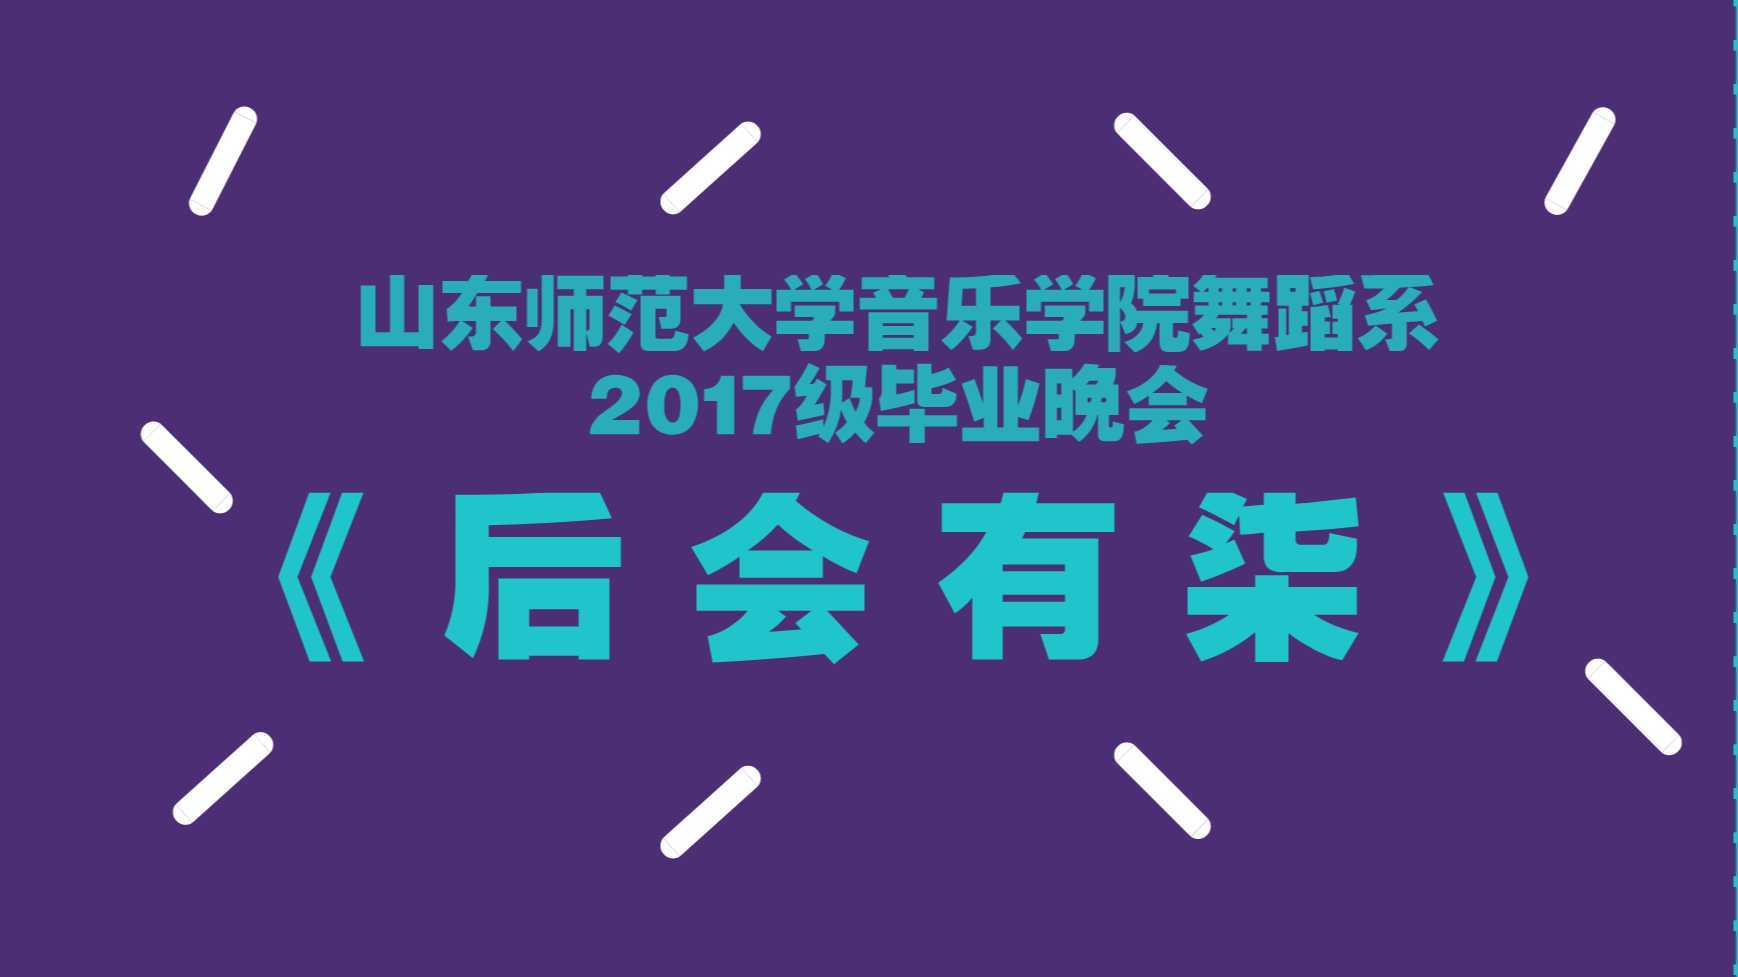 山东师范大学2017级舞蹈班毕业晚会宣传片